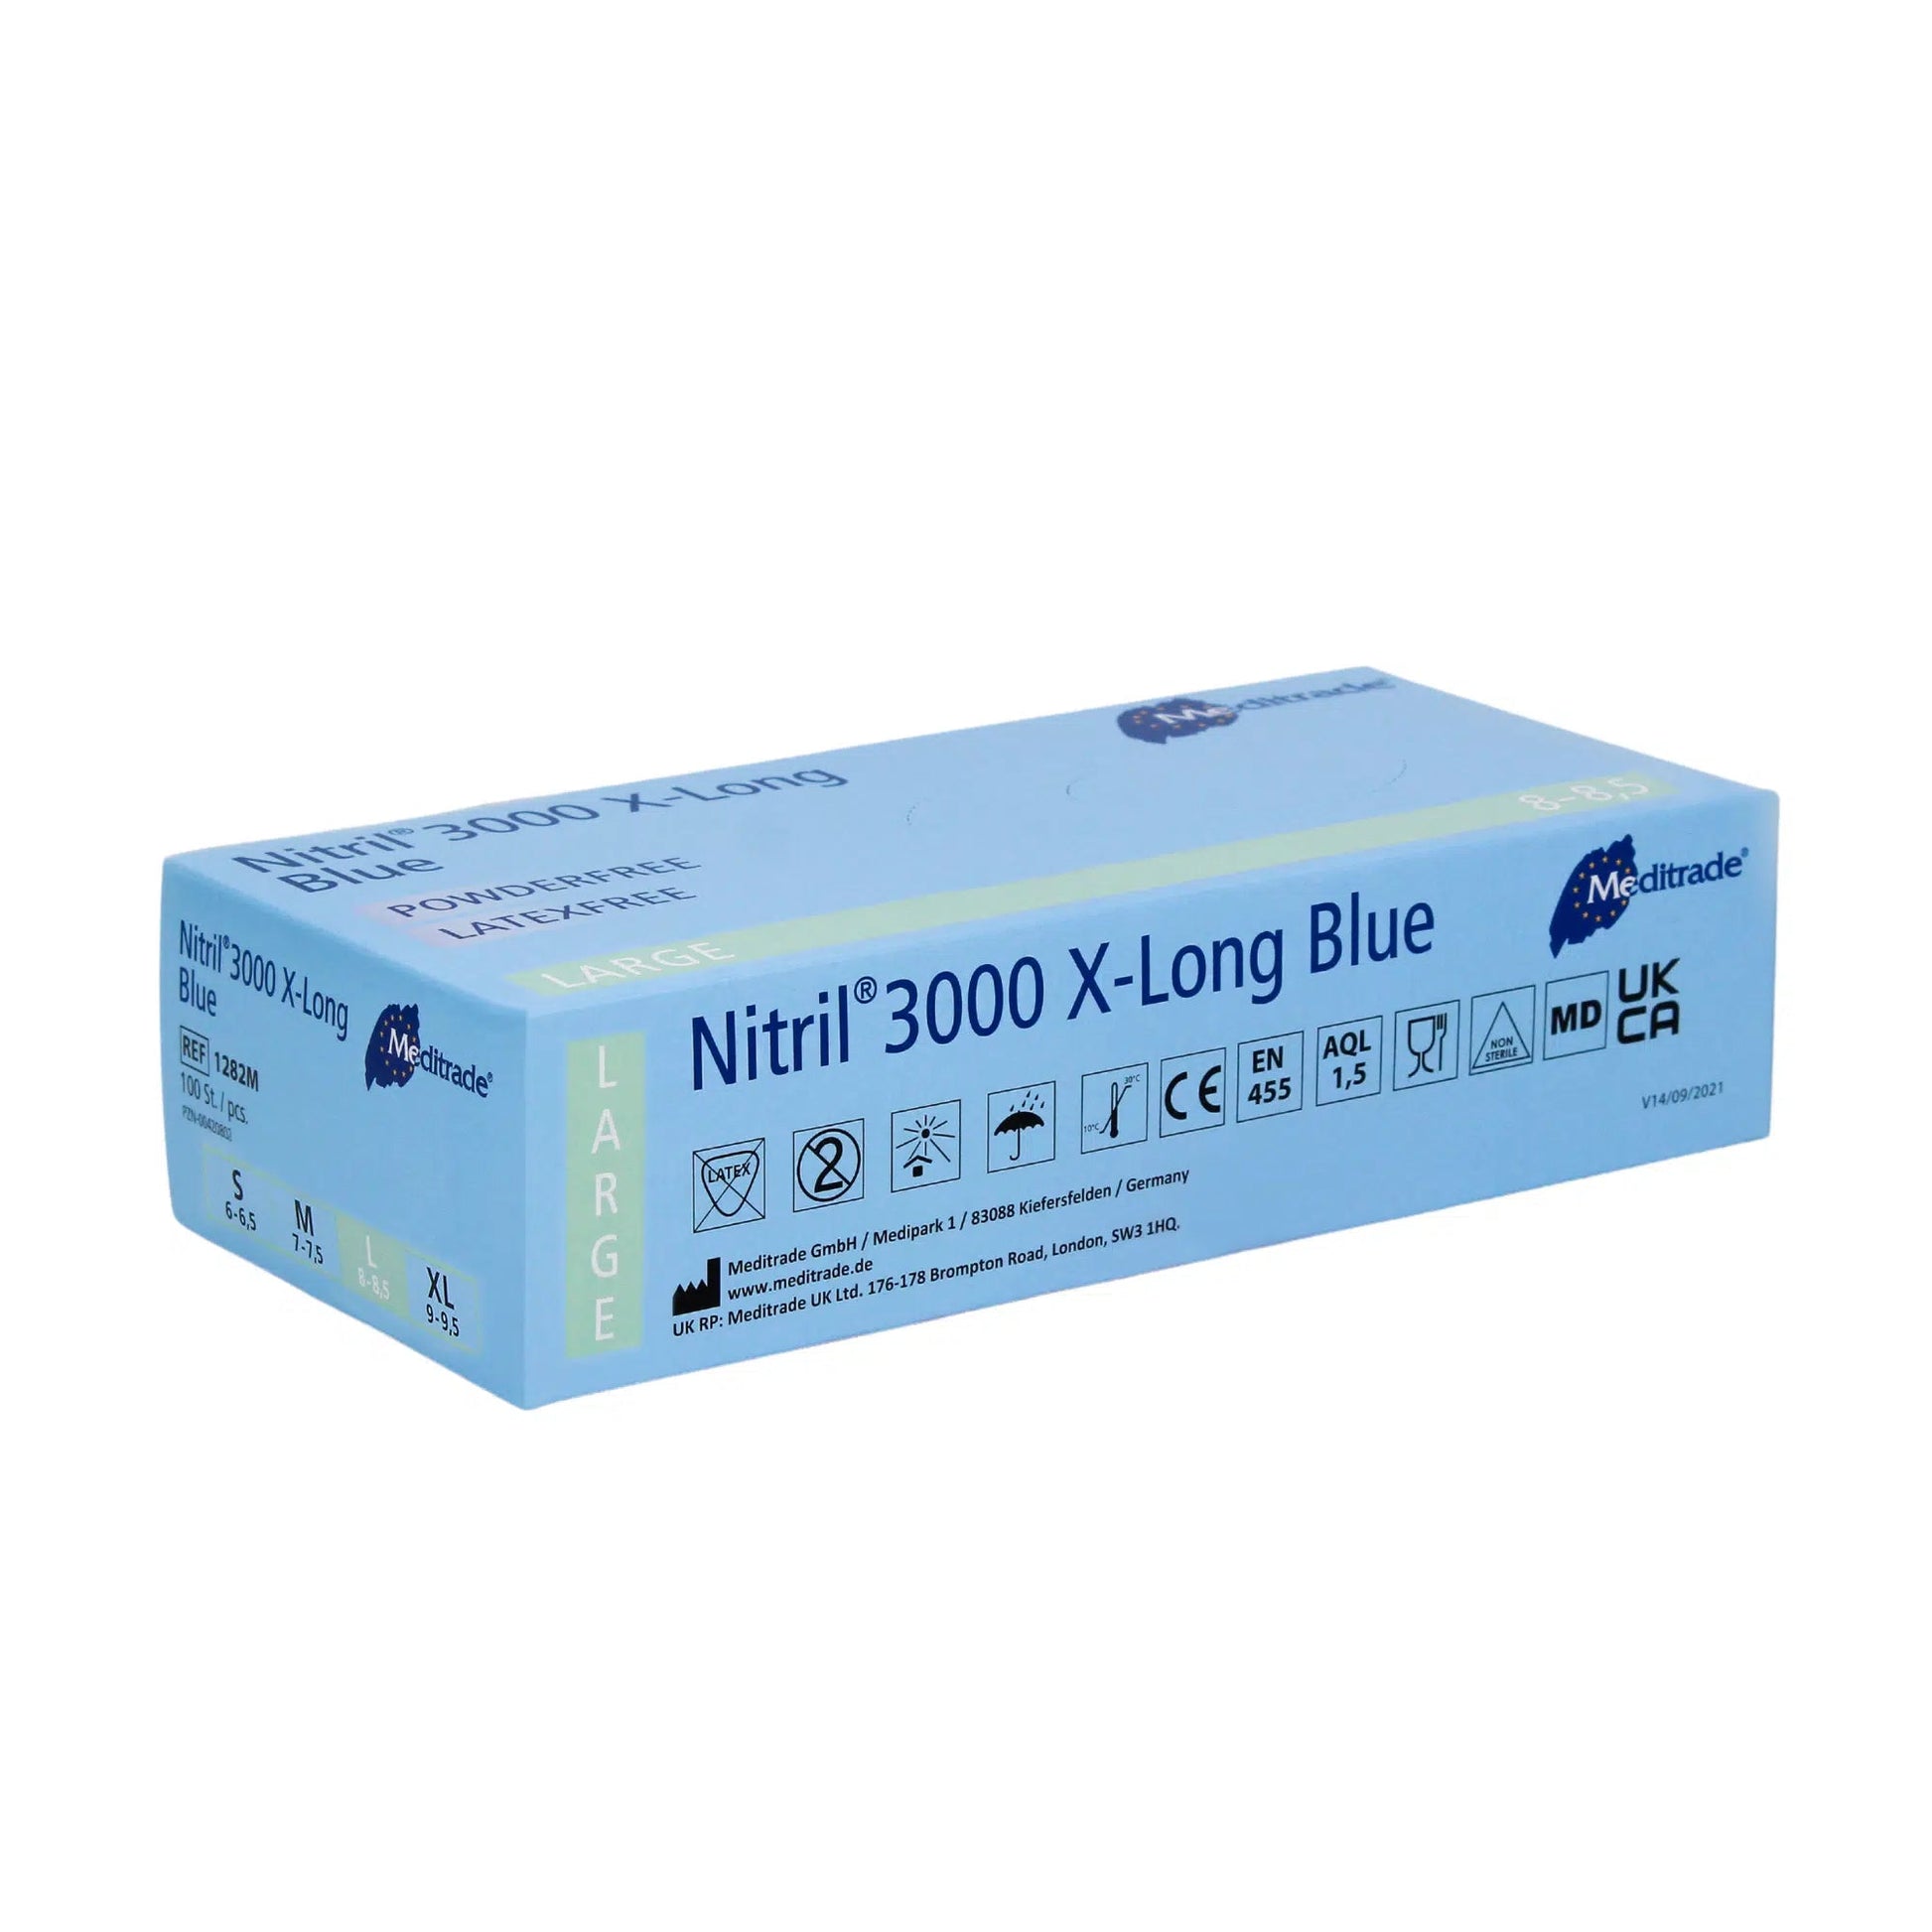 Eine Schachtel Meditrade Nitril® 3000 X-Long 100 Stk. Nitrilhandschuhe extralang, blau extralange Nitrilhandschuhe in großer Größe. Die Verpackung ist blau und weiß, gekennzeichnet mit verschiedenen Zertifizierungen wie CE.